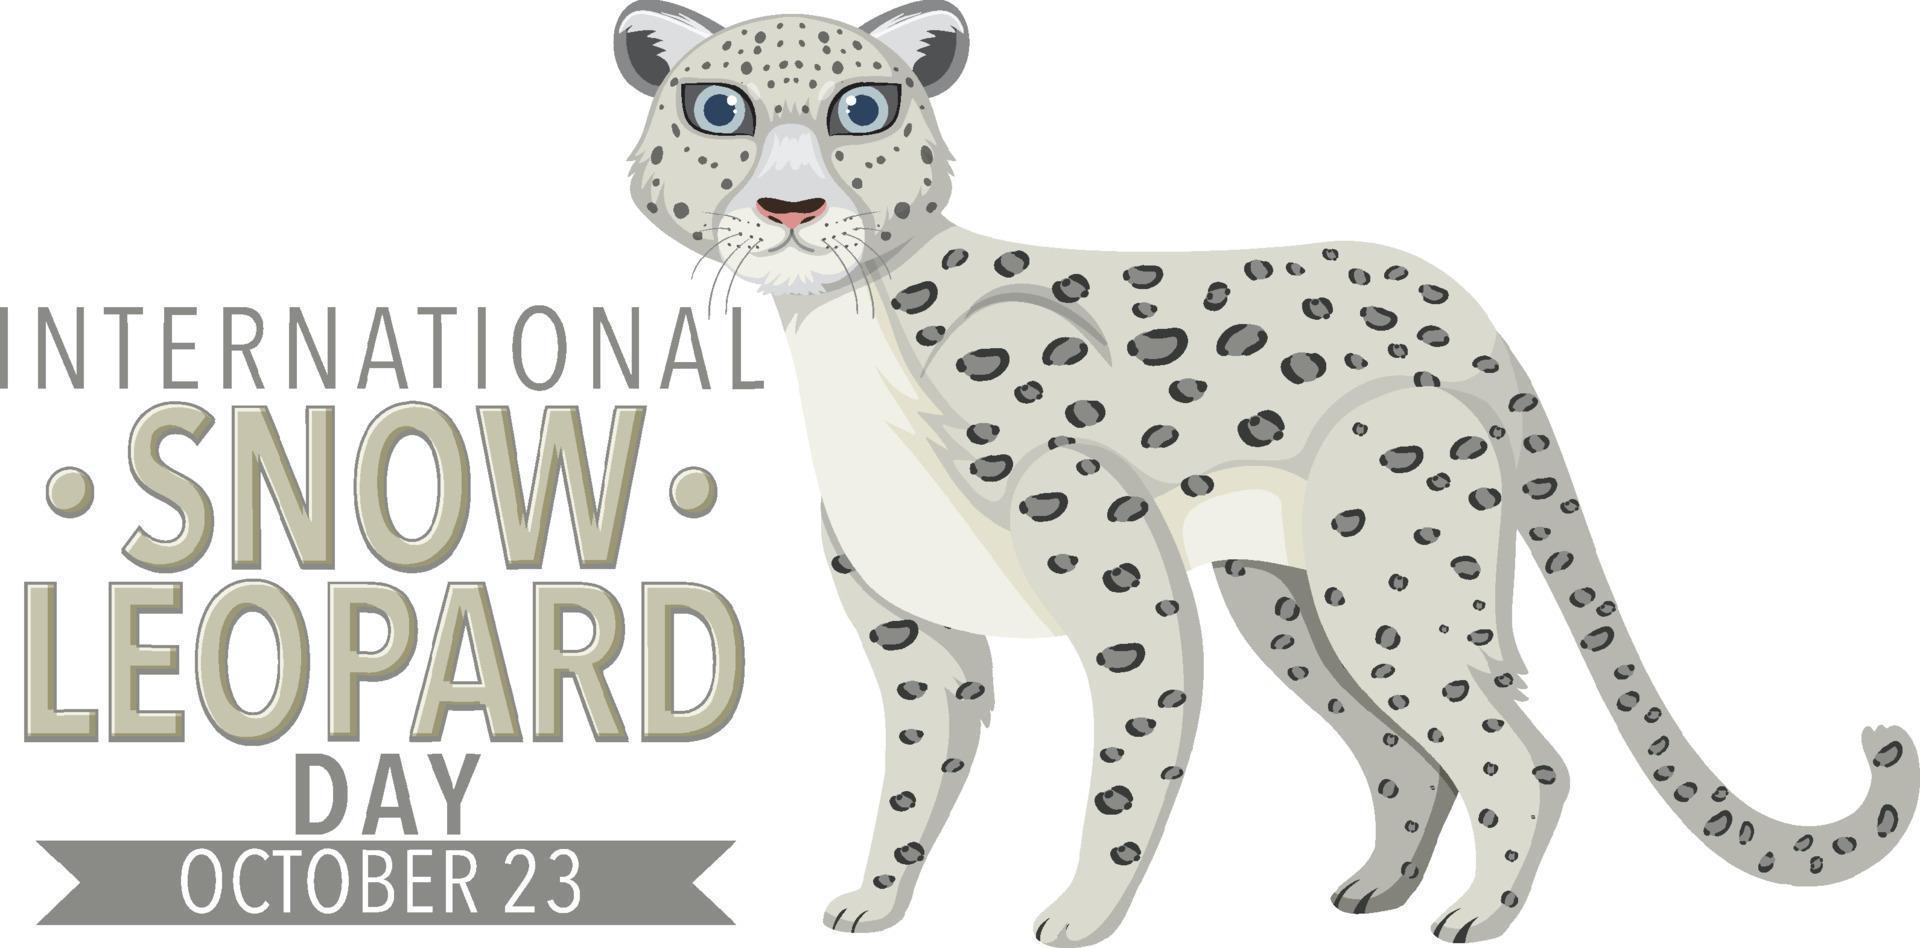 conceito internacional do logotipo do leopardo da neve vetor